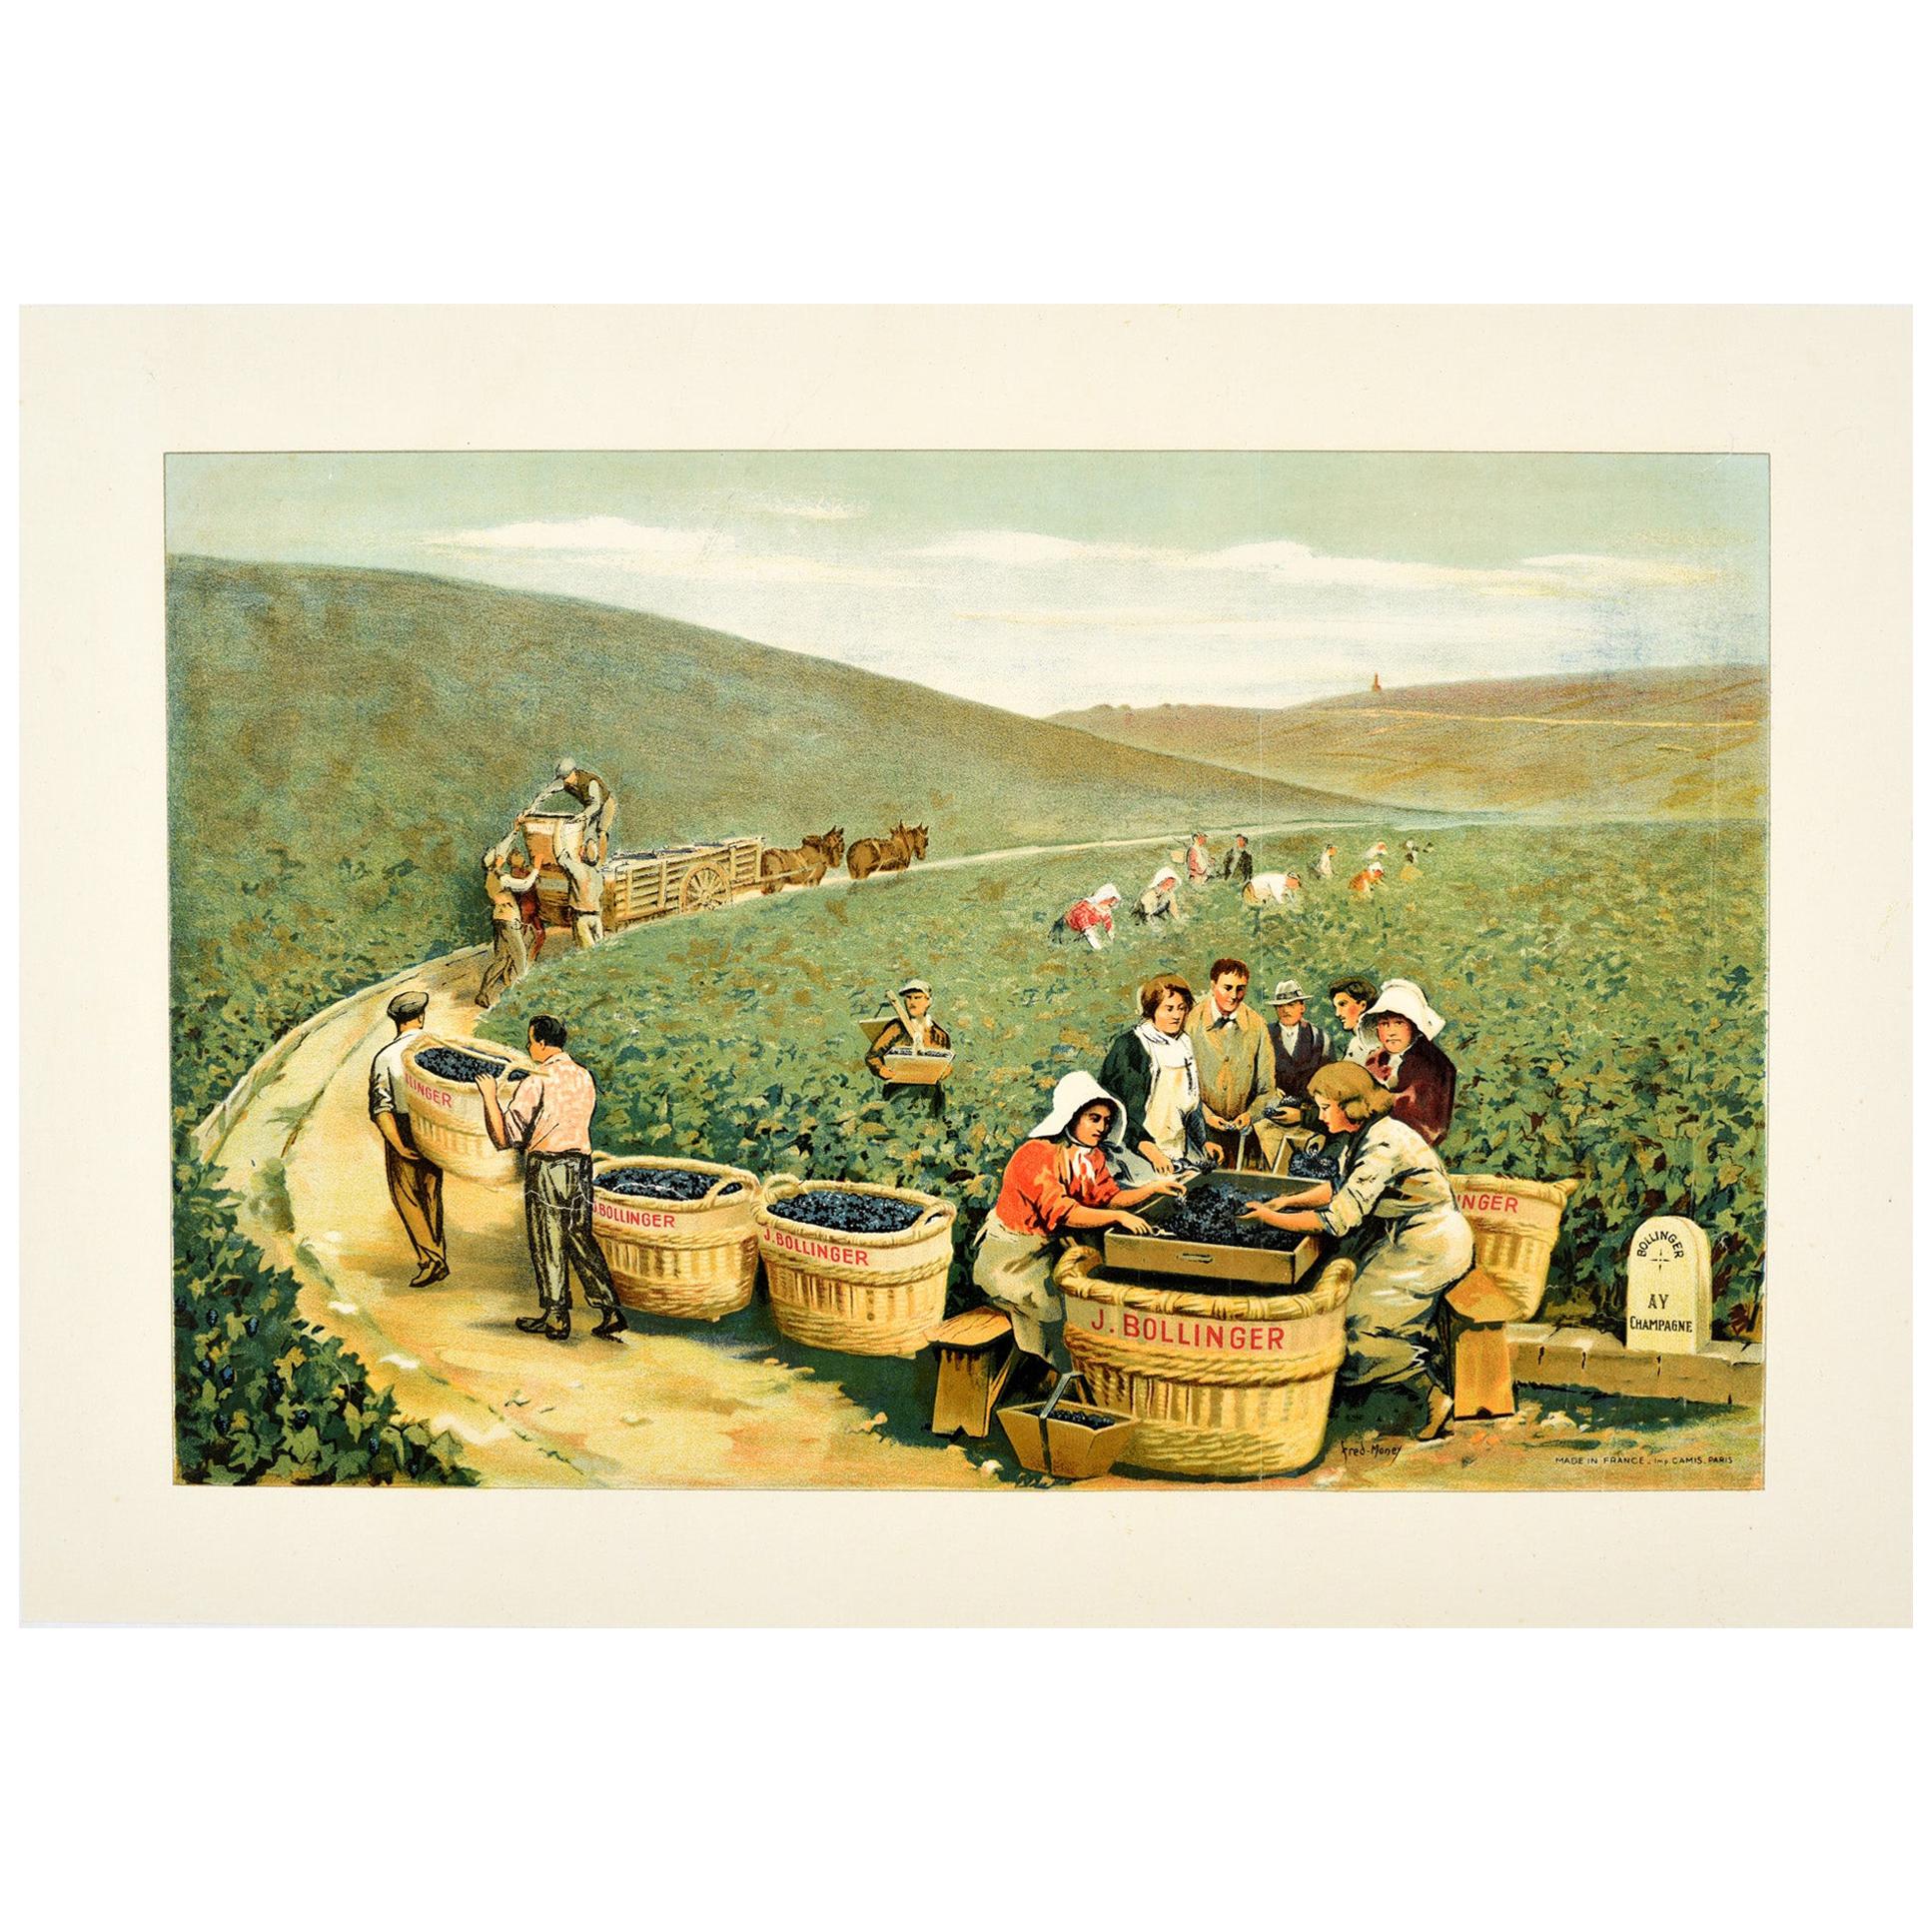 Affiche vintage originale et ancienne de J. Bollinger sur le champagne scintillant d'un vignoble Ay France